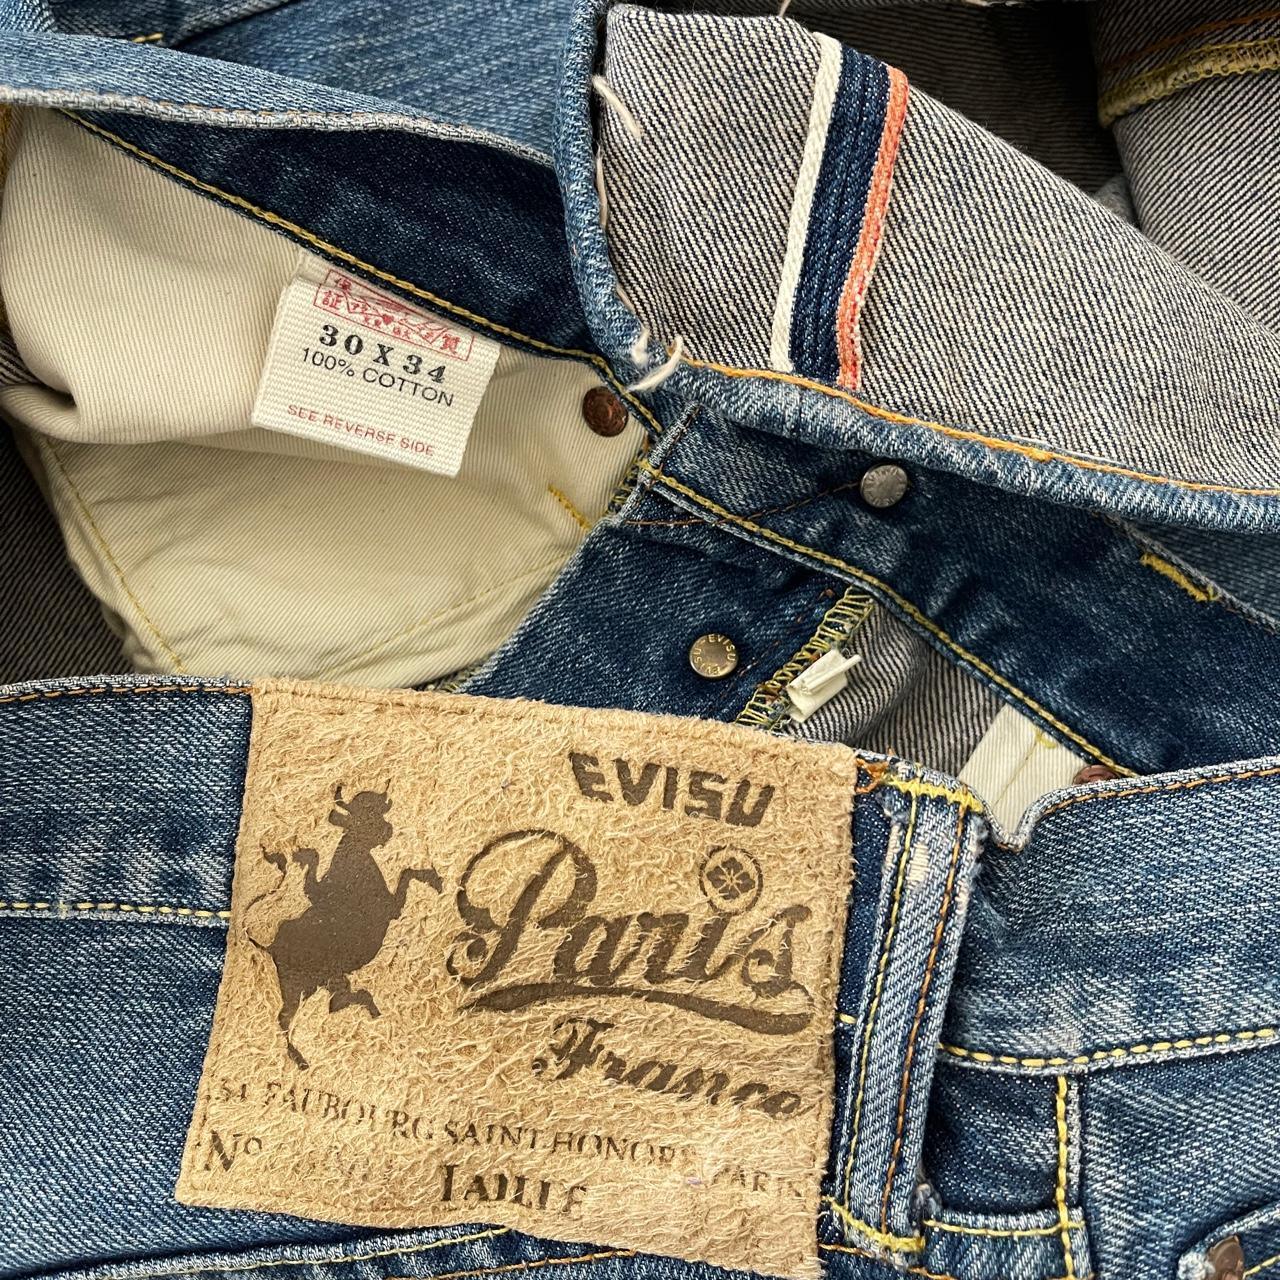 Evisu Paris Jeans - Known Source